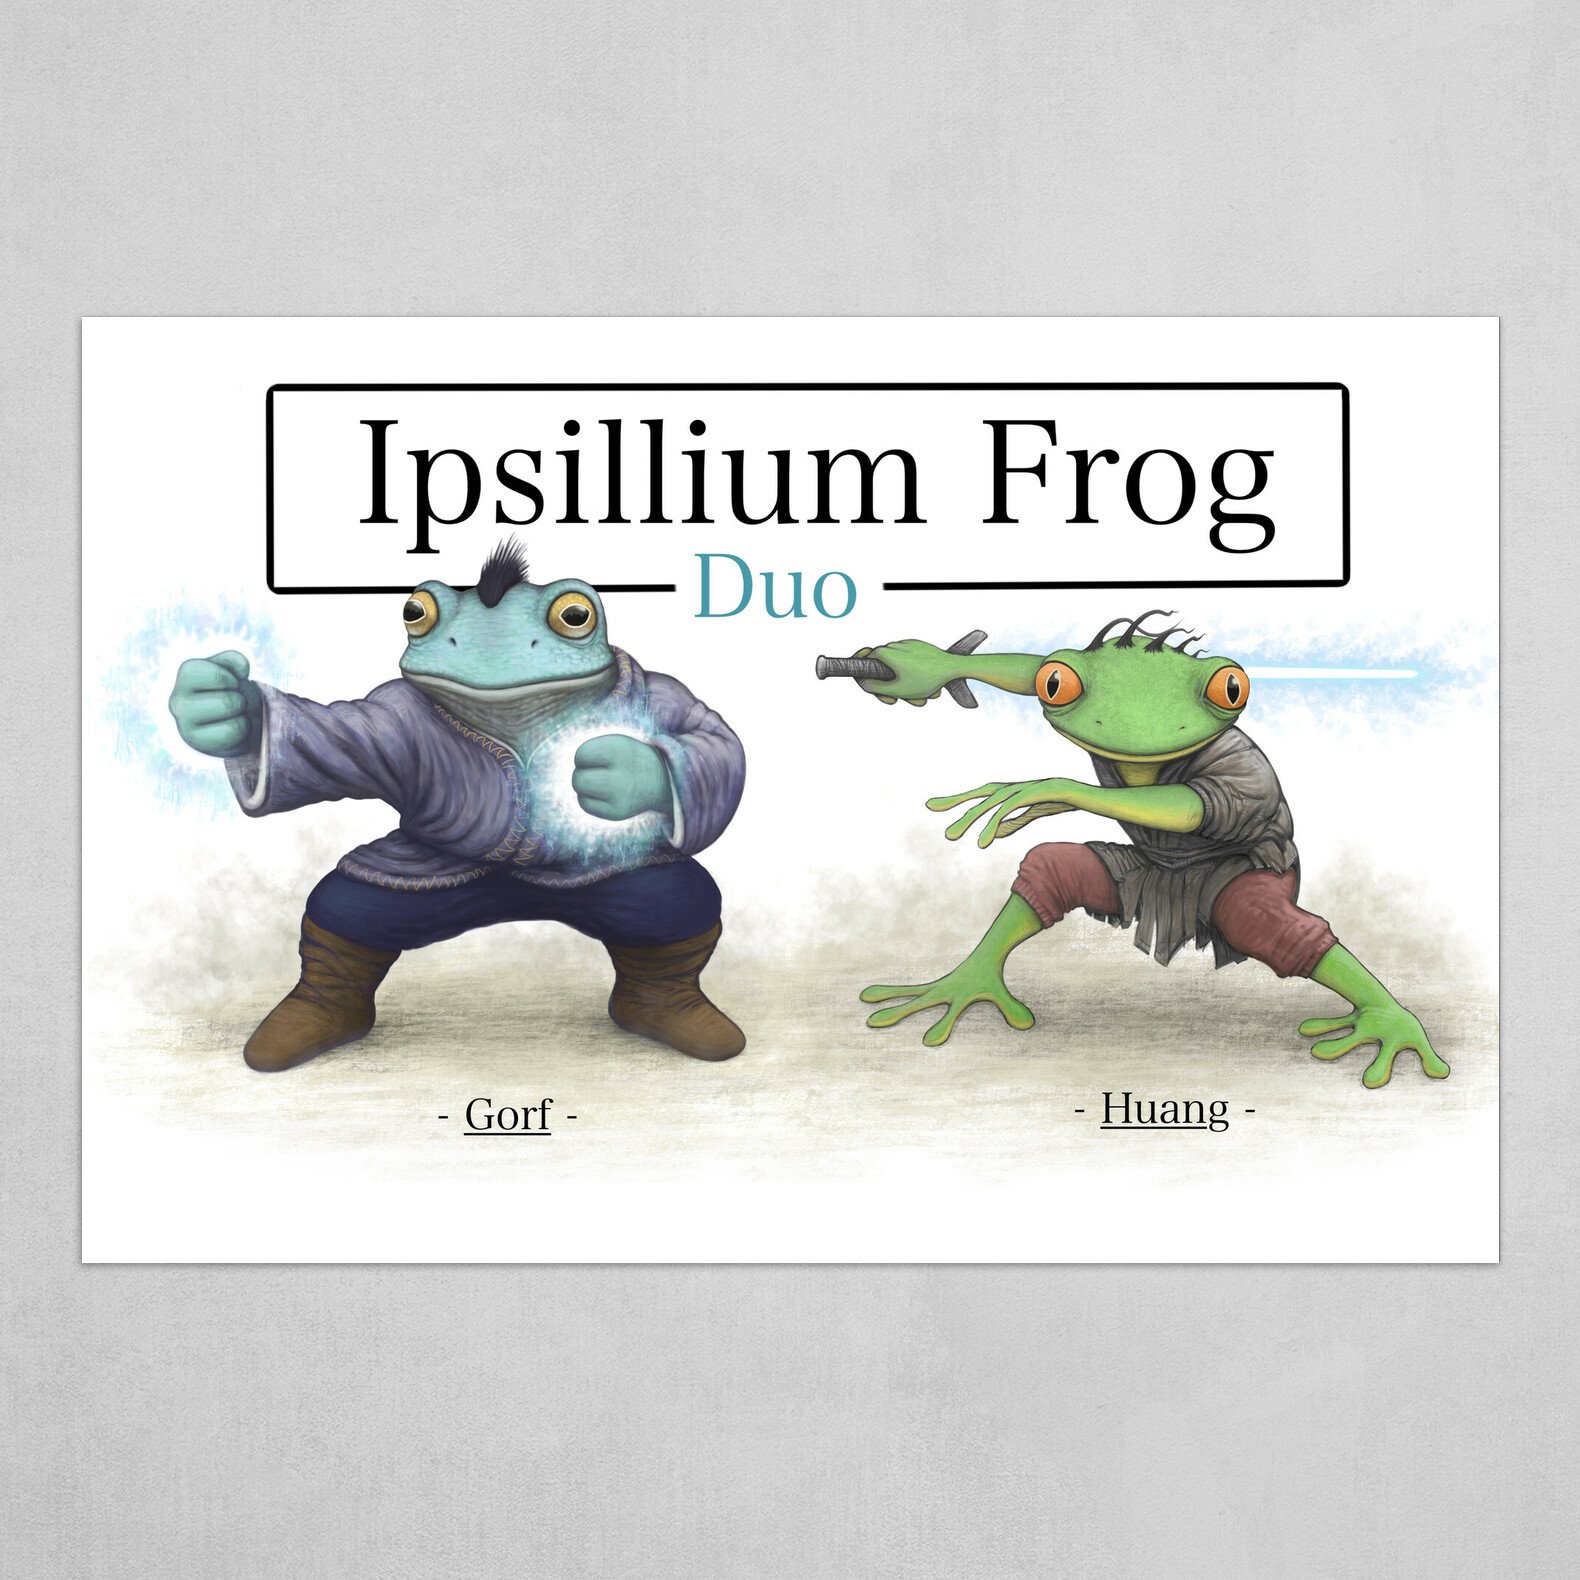 Ipsillium Frog Duo